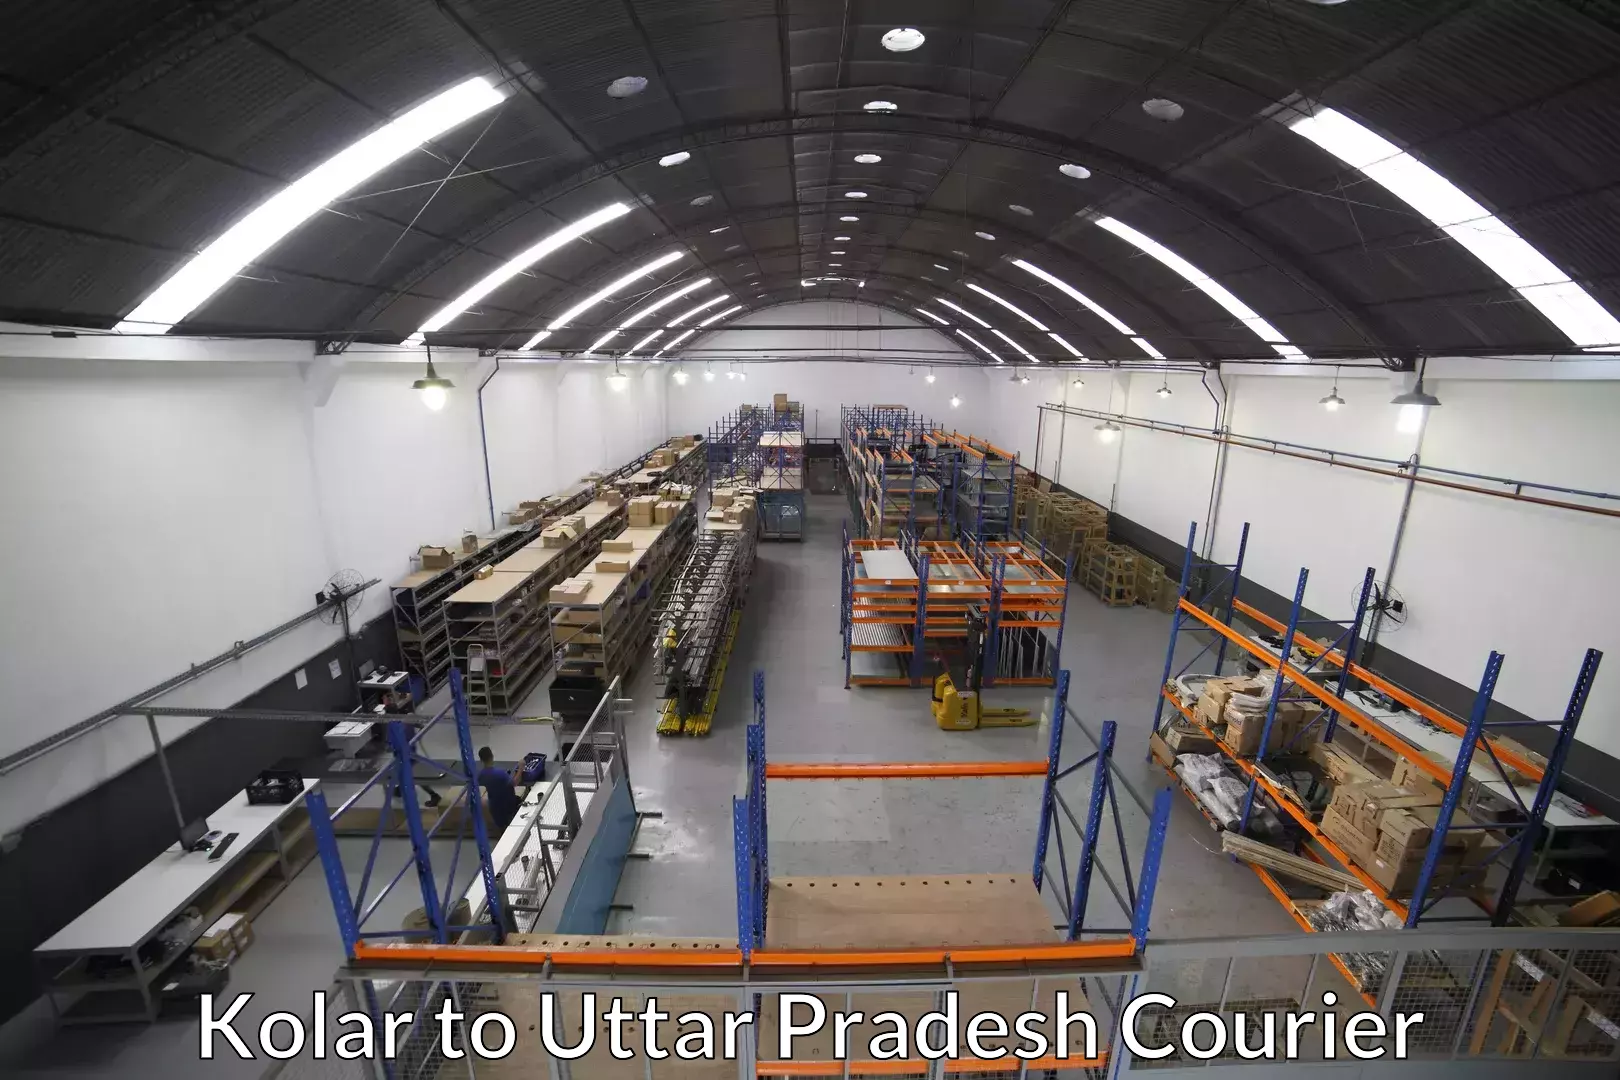 Moving service excellence Kolar to Uttar Pradesh